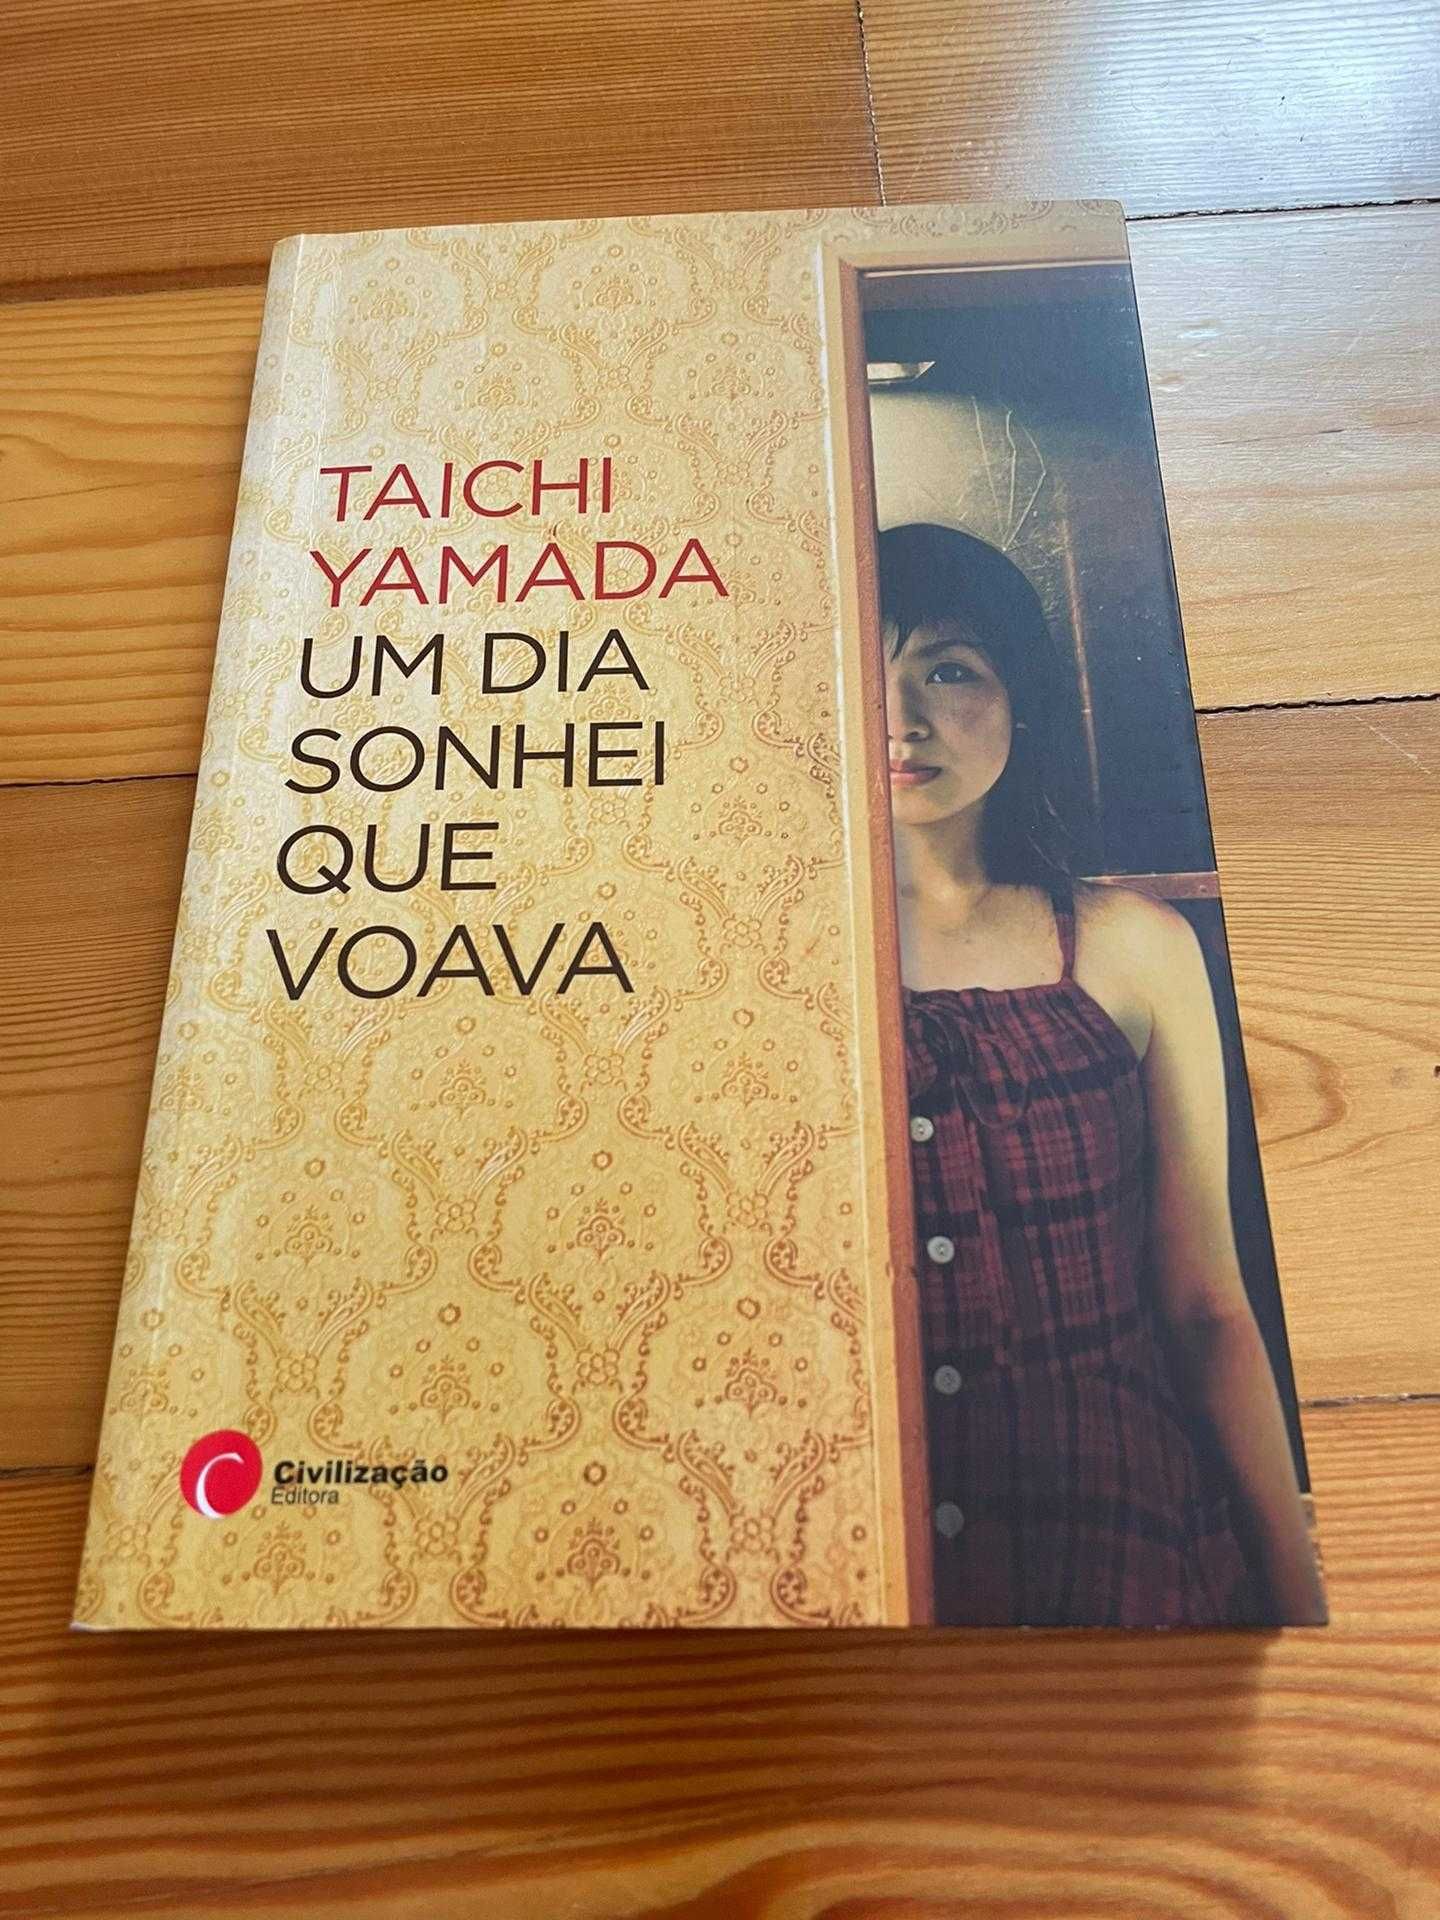 Livro "Um Dia Sonhei que Voava" de Taichi Yamada